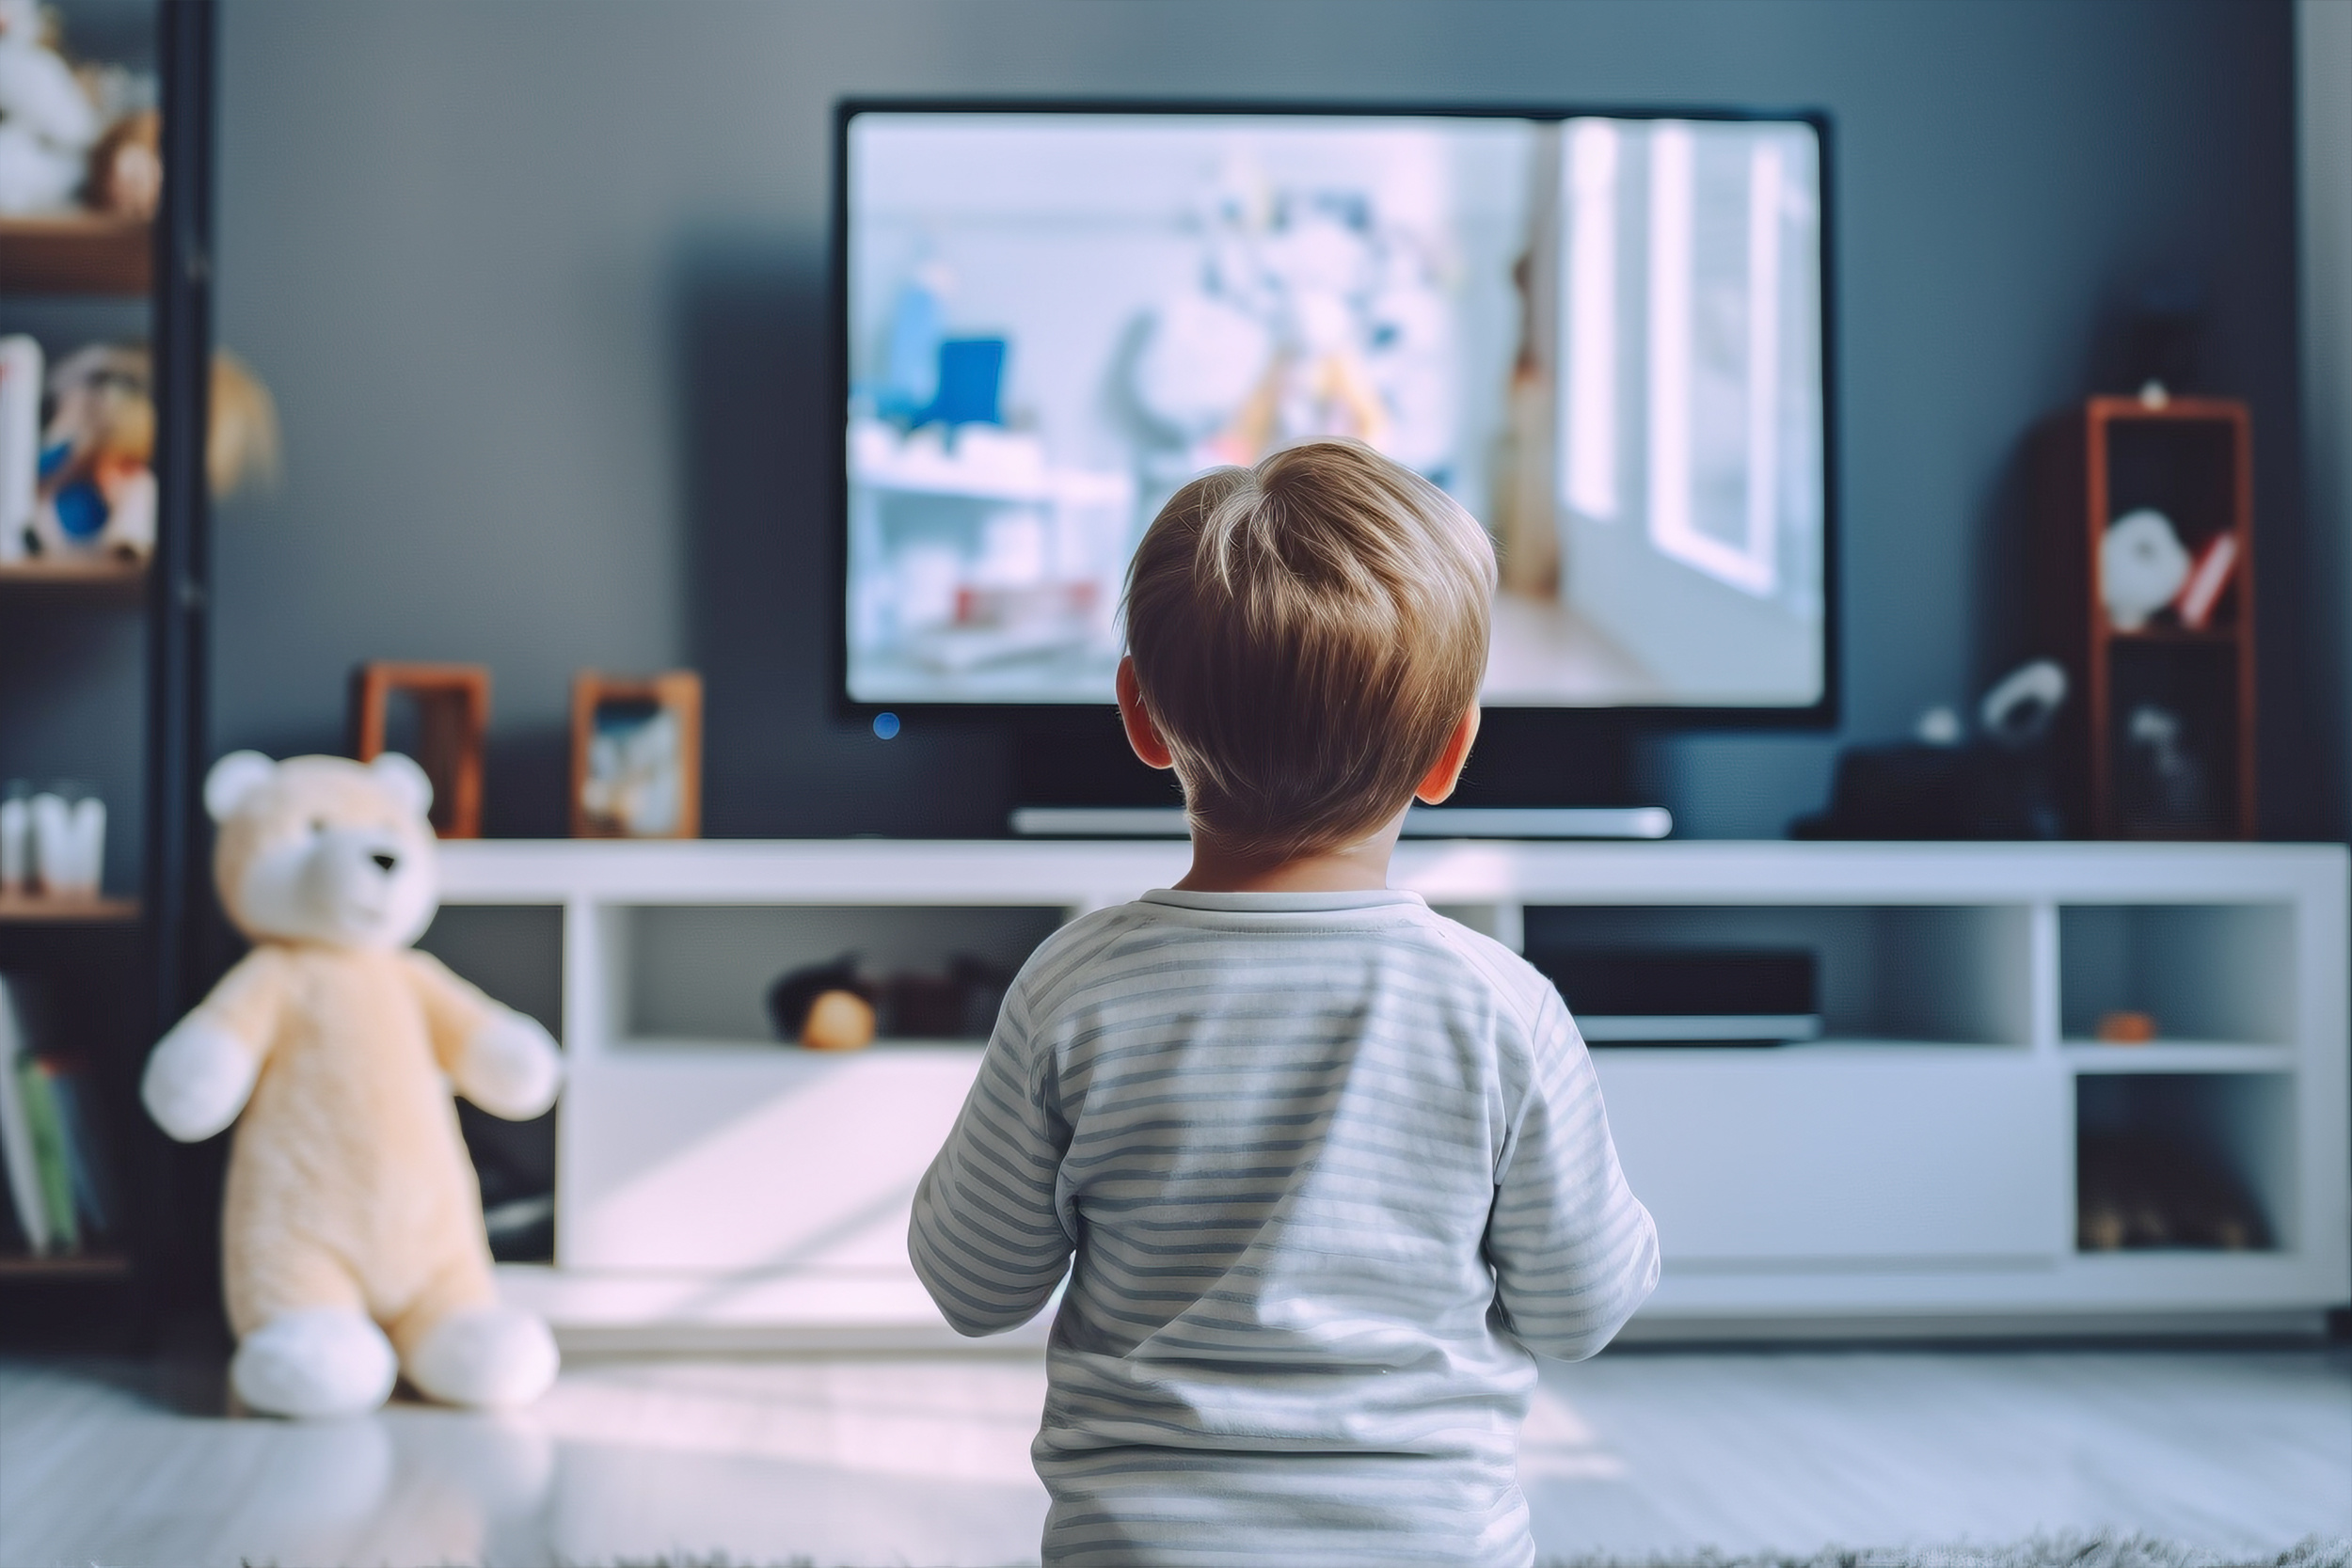 Ein Kind schaut TV - Pädagogische Fachtraining für Mediennutzung für Kinder U3